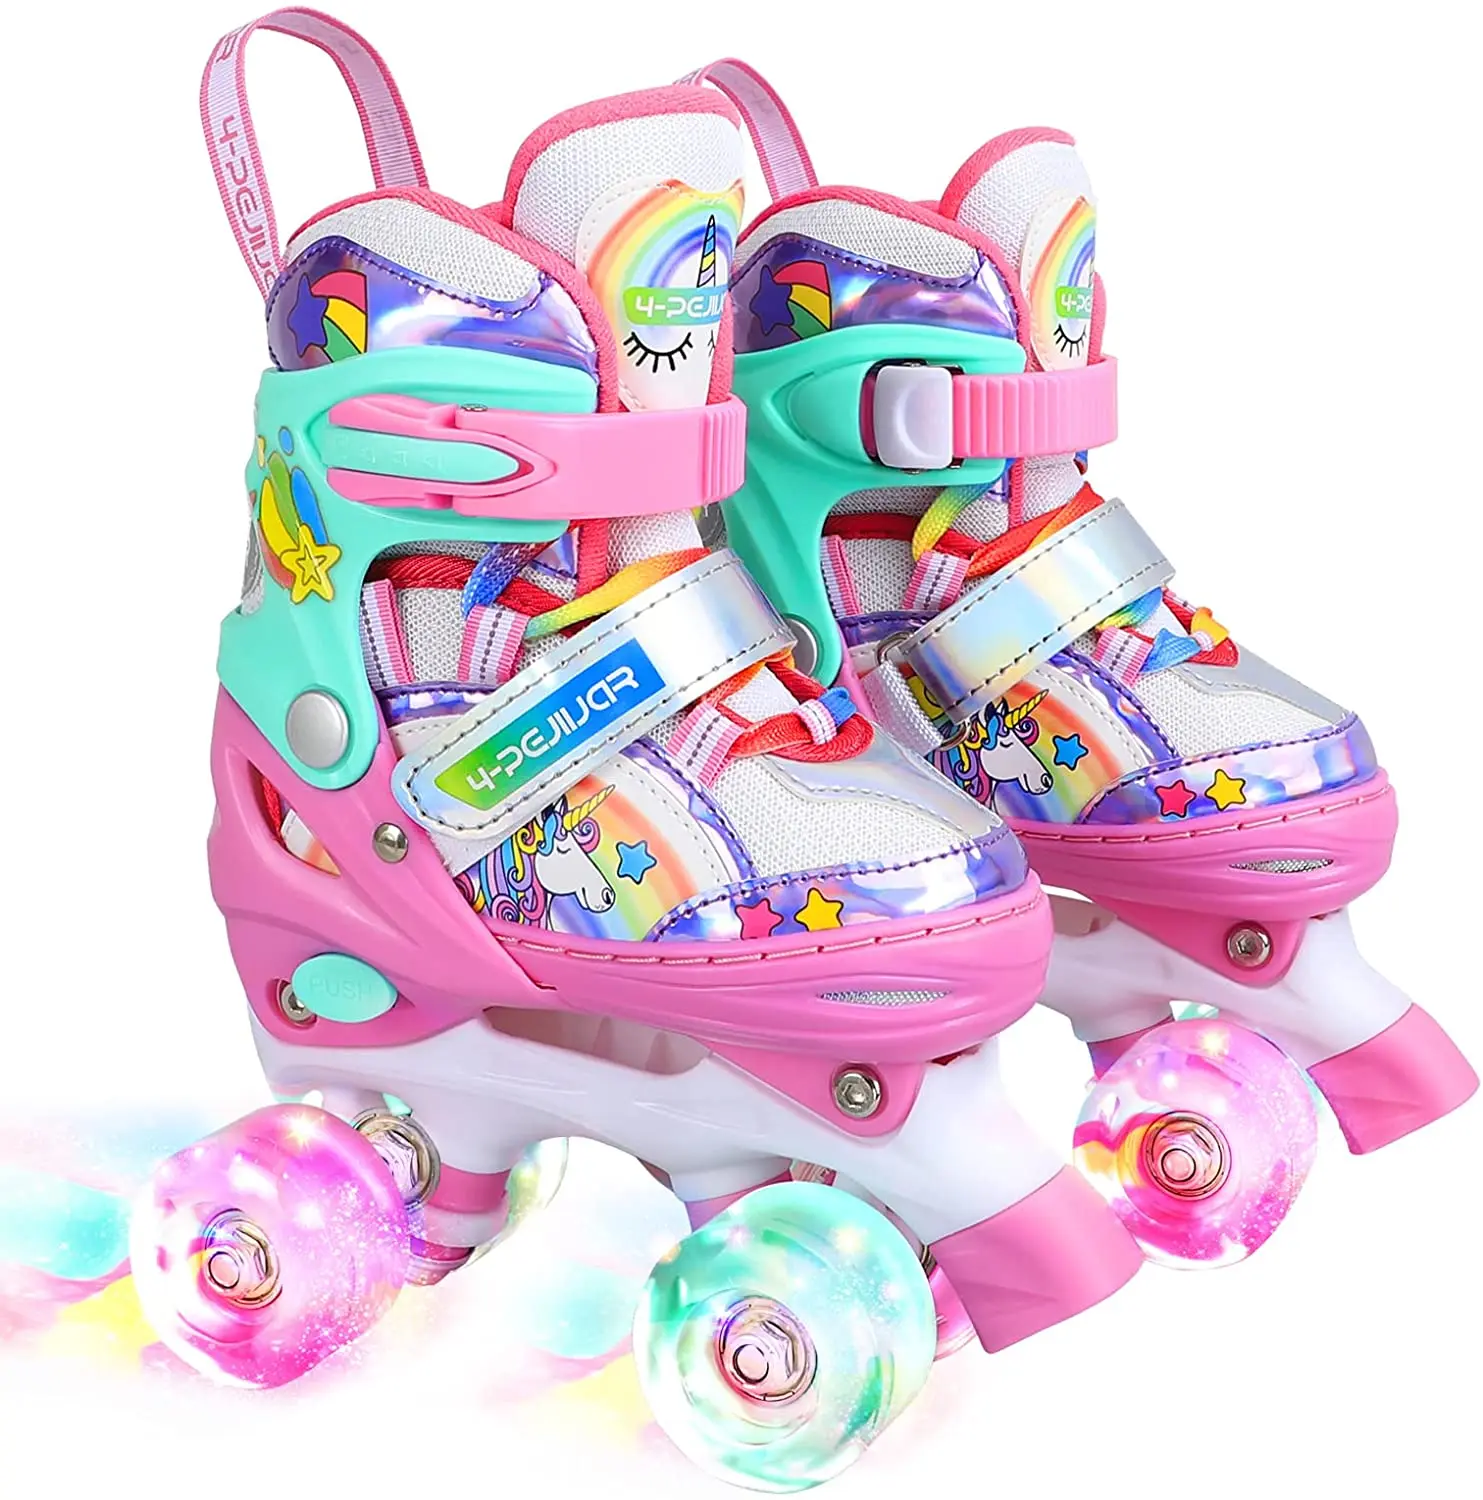 Adjustable Inline Roller Skates Set Kids Boys Girls Youth Gifts Blue Pink S/M 